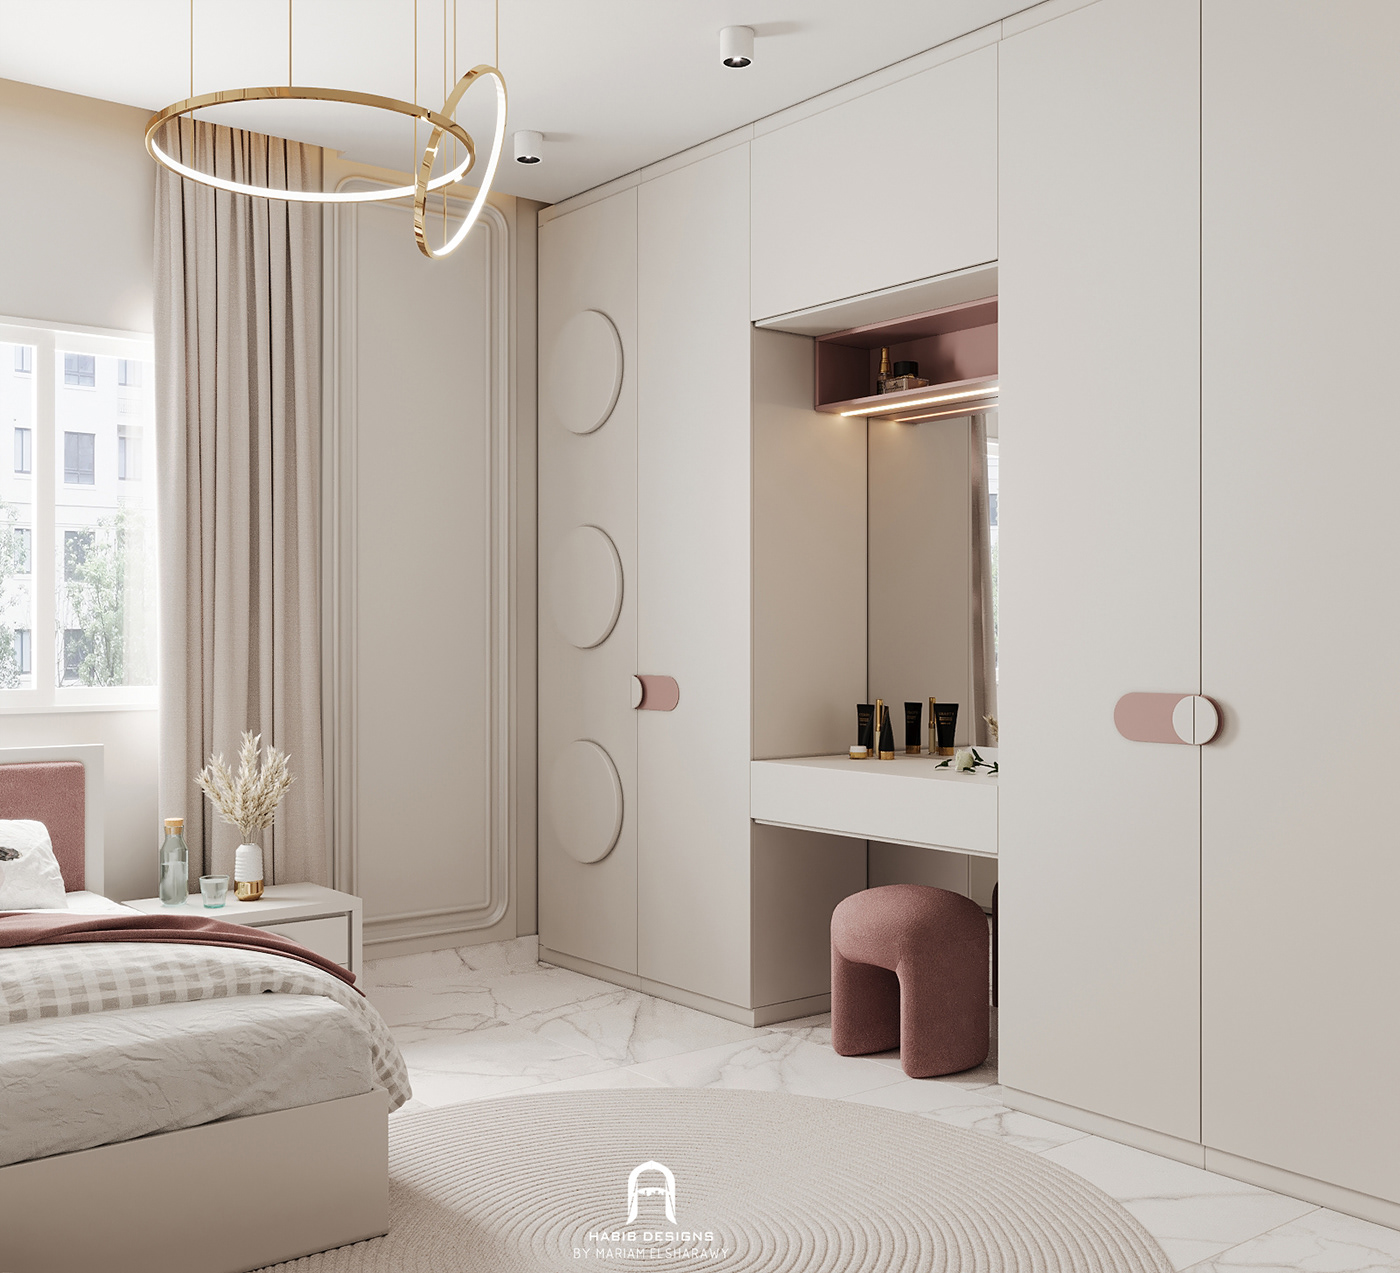 bedroom decor Interior Render architecture interior design  modern visualization 3D corona